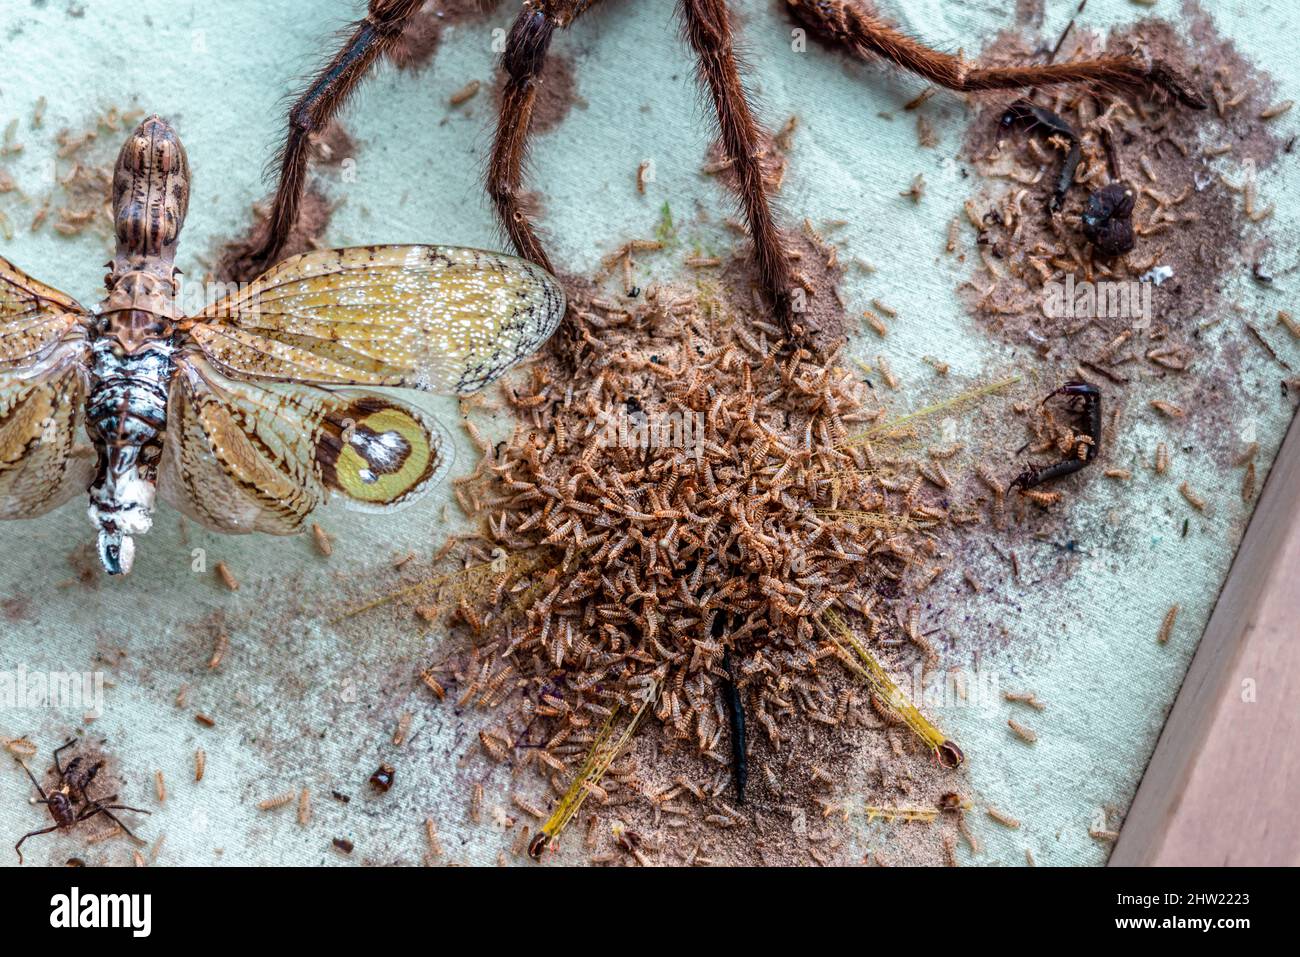 Schönes fulgorides Insekt (Fulgora laternaria), unbeschädigt durch Tausende von Teppichkäfer (Anthrenus verbacci) Larven. Voll gefressen Cricket. Stockfoto